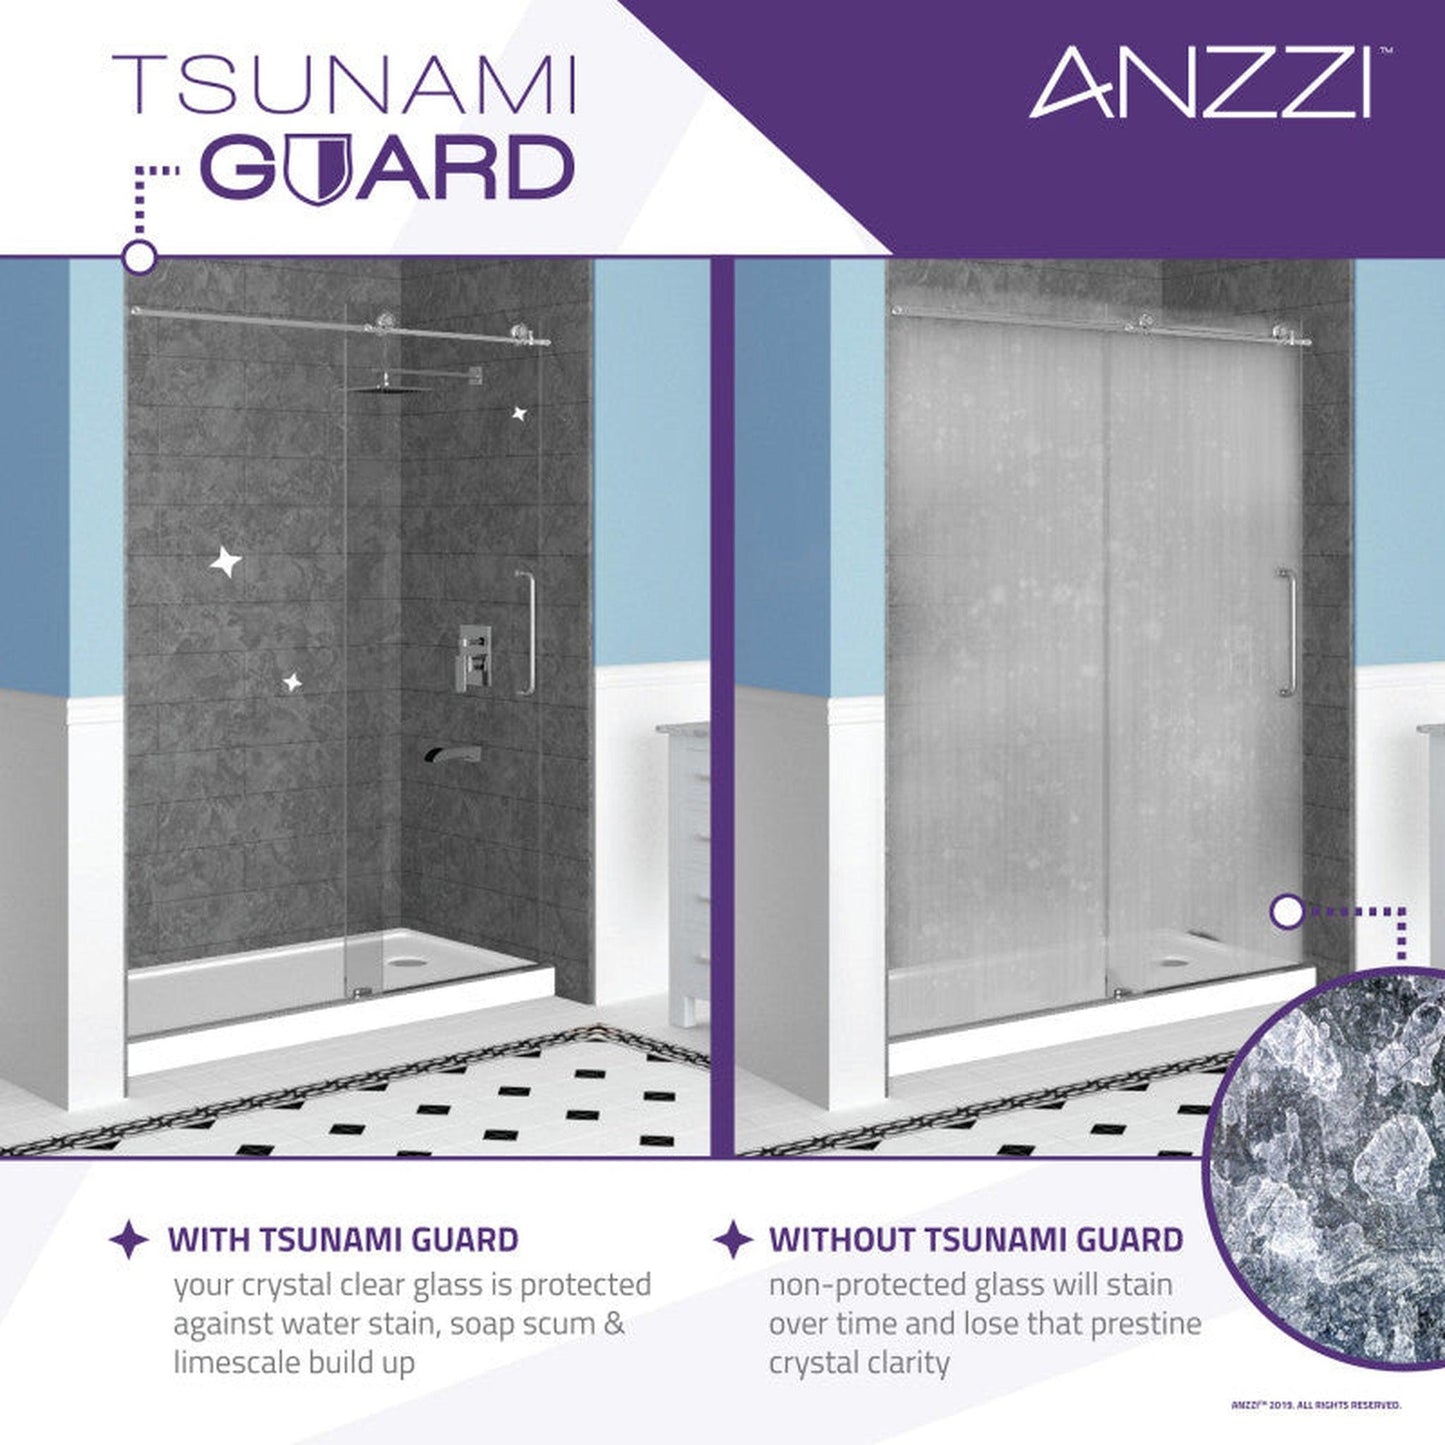 ANZZI Kahn Series 48" x 76" Frameless Rectangular Matte Black Sliding Shower Door With Handle and Tsunami Guard